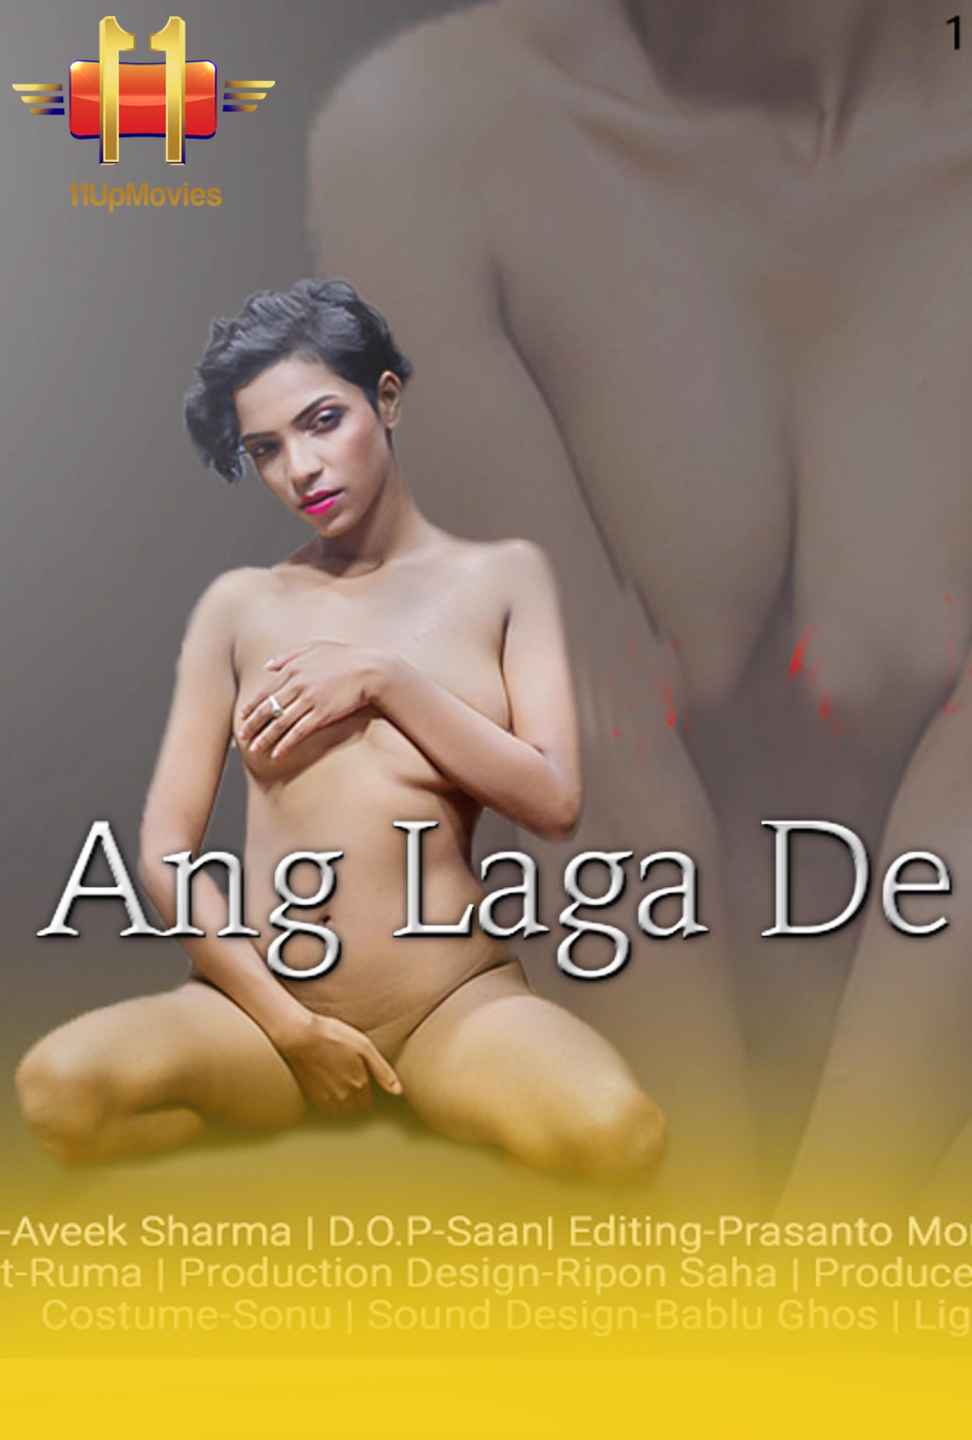 Ang Laga De (2020) Hindi | 11UpMovies Short Film | Hindi Hot Video | 720p WEB-DL | Download | Watch Online